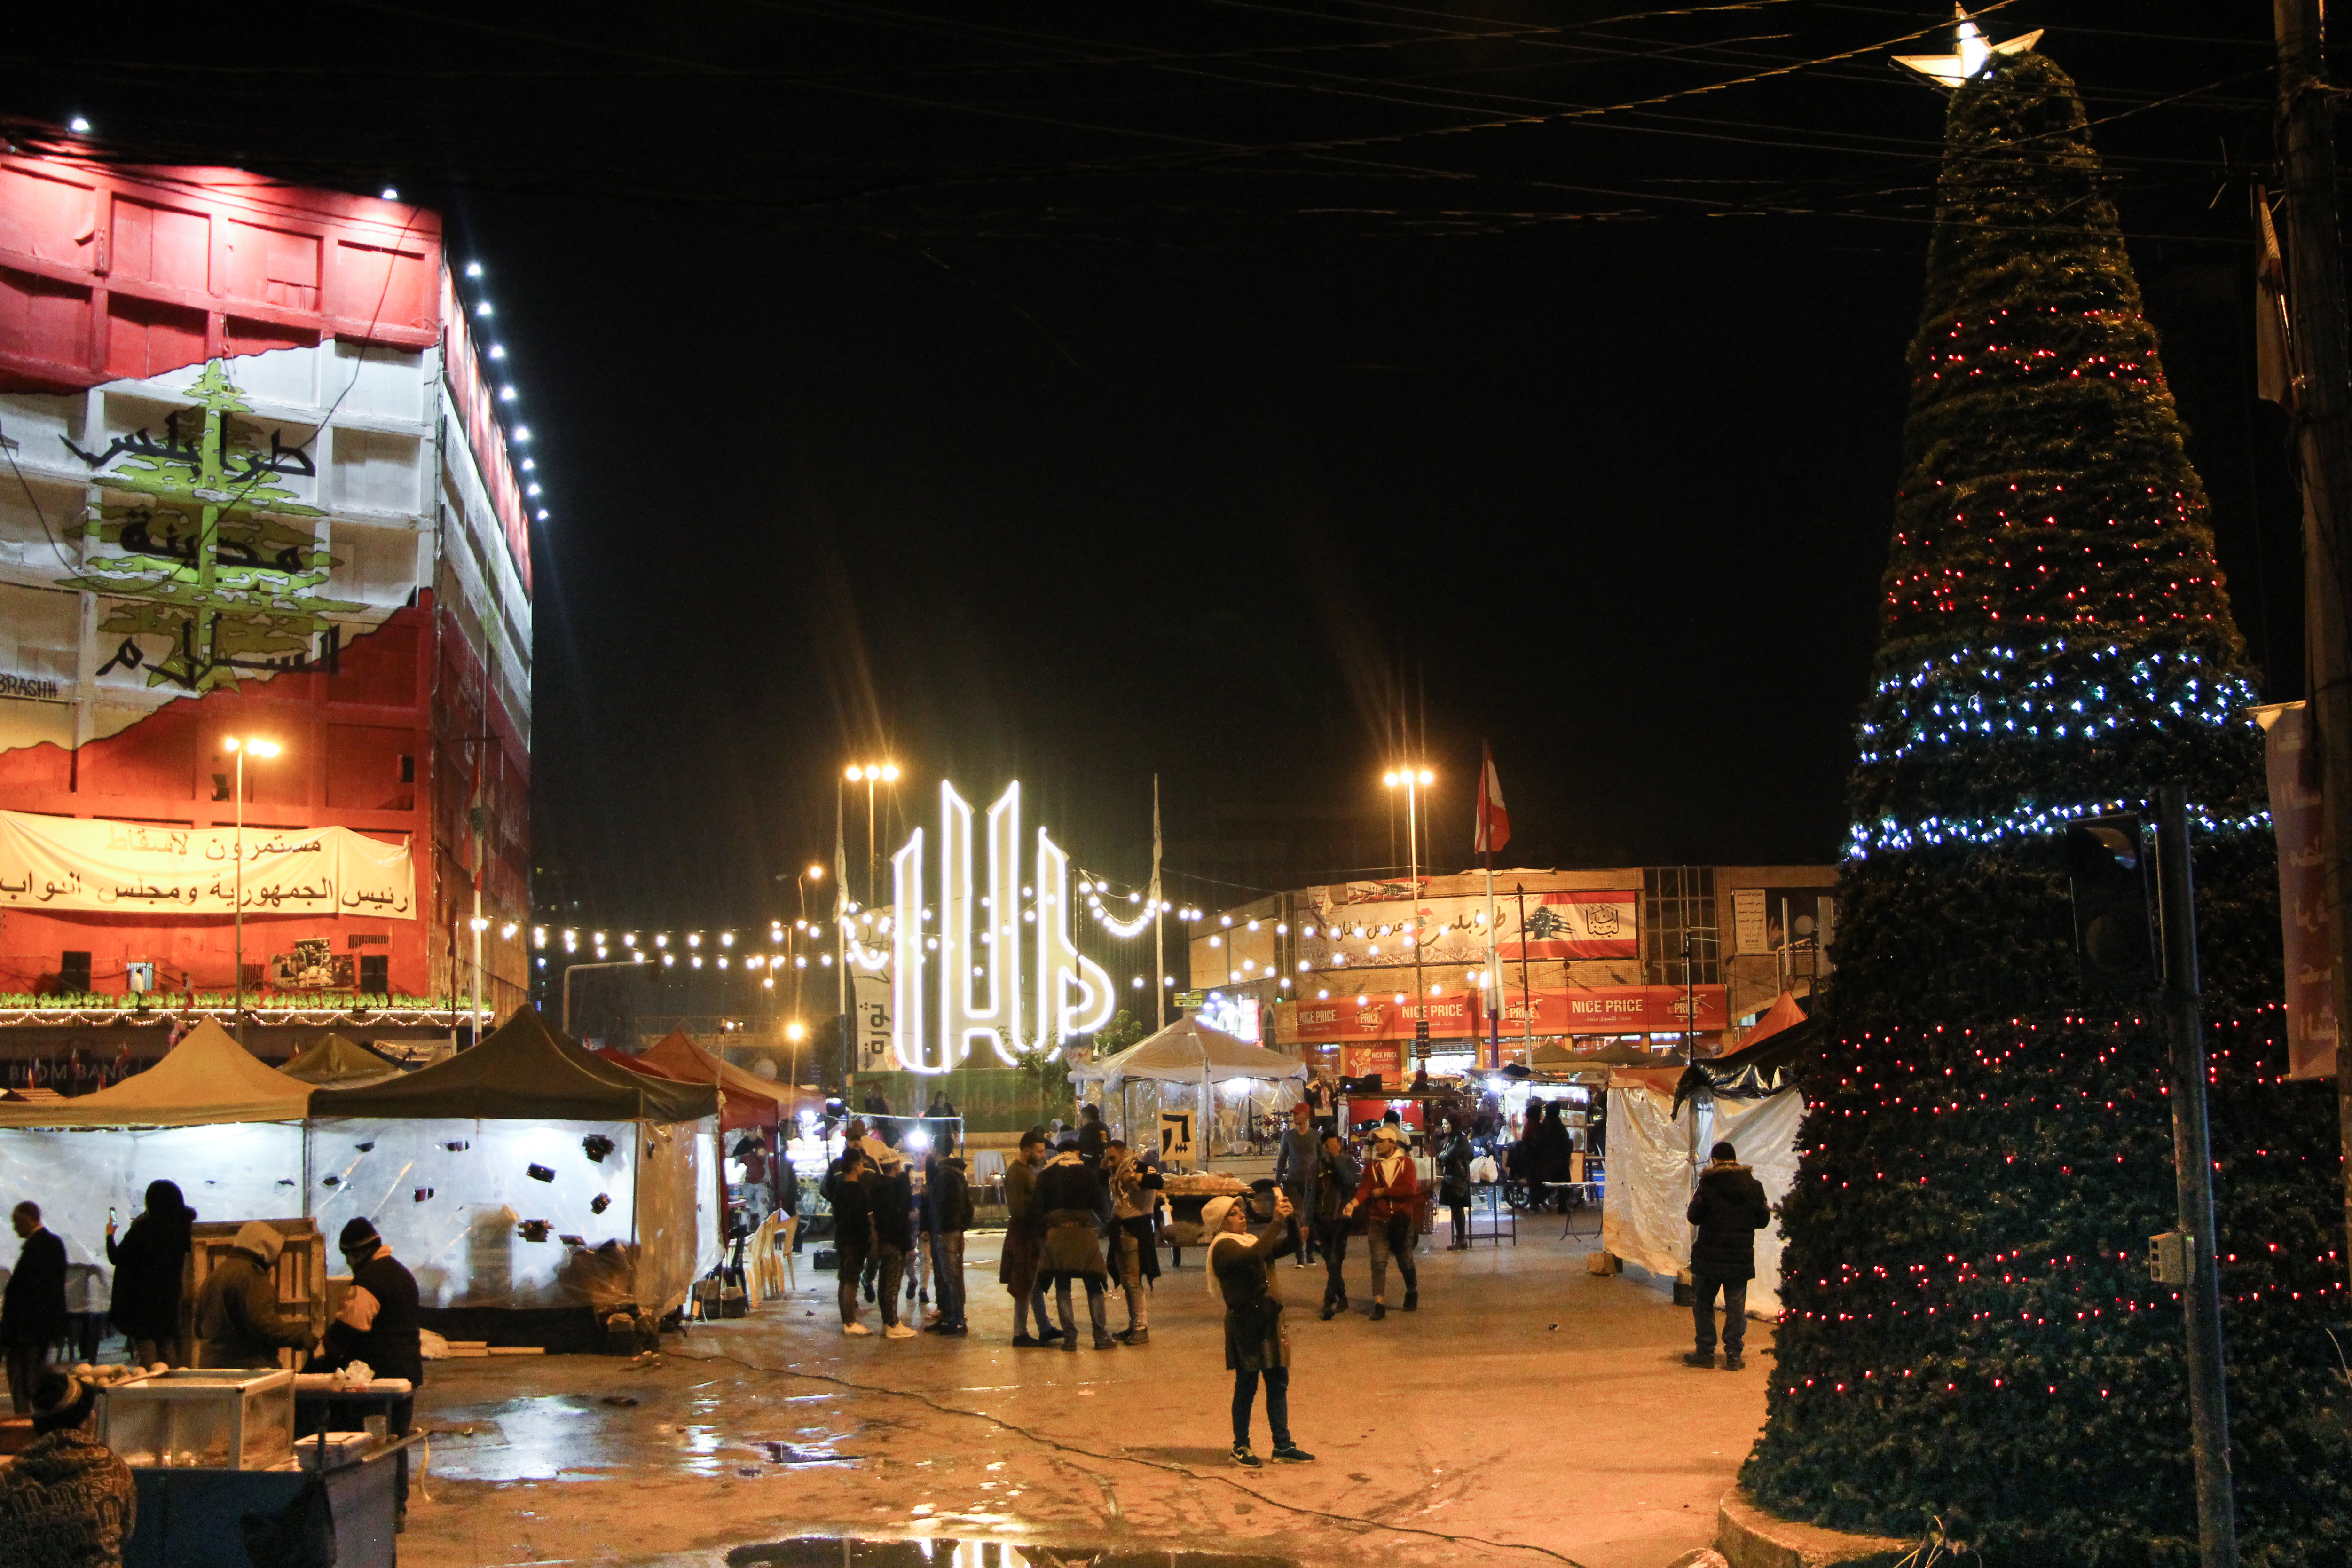 بمدينة طرابلس اللبنانية شجرة عيد الميلاد في ساحة النور، بجانب كلمة "الله" المكتوبة بحروف كبيرة مضاءة بألوان زاهية. Foto: Hanna Resch